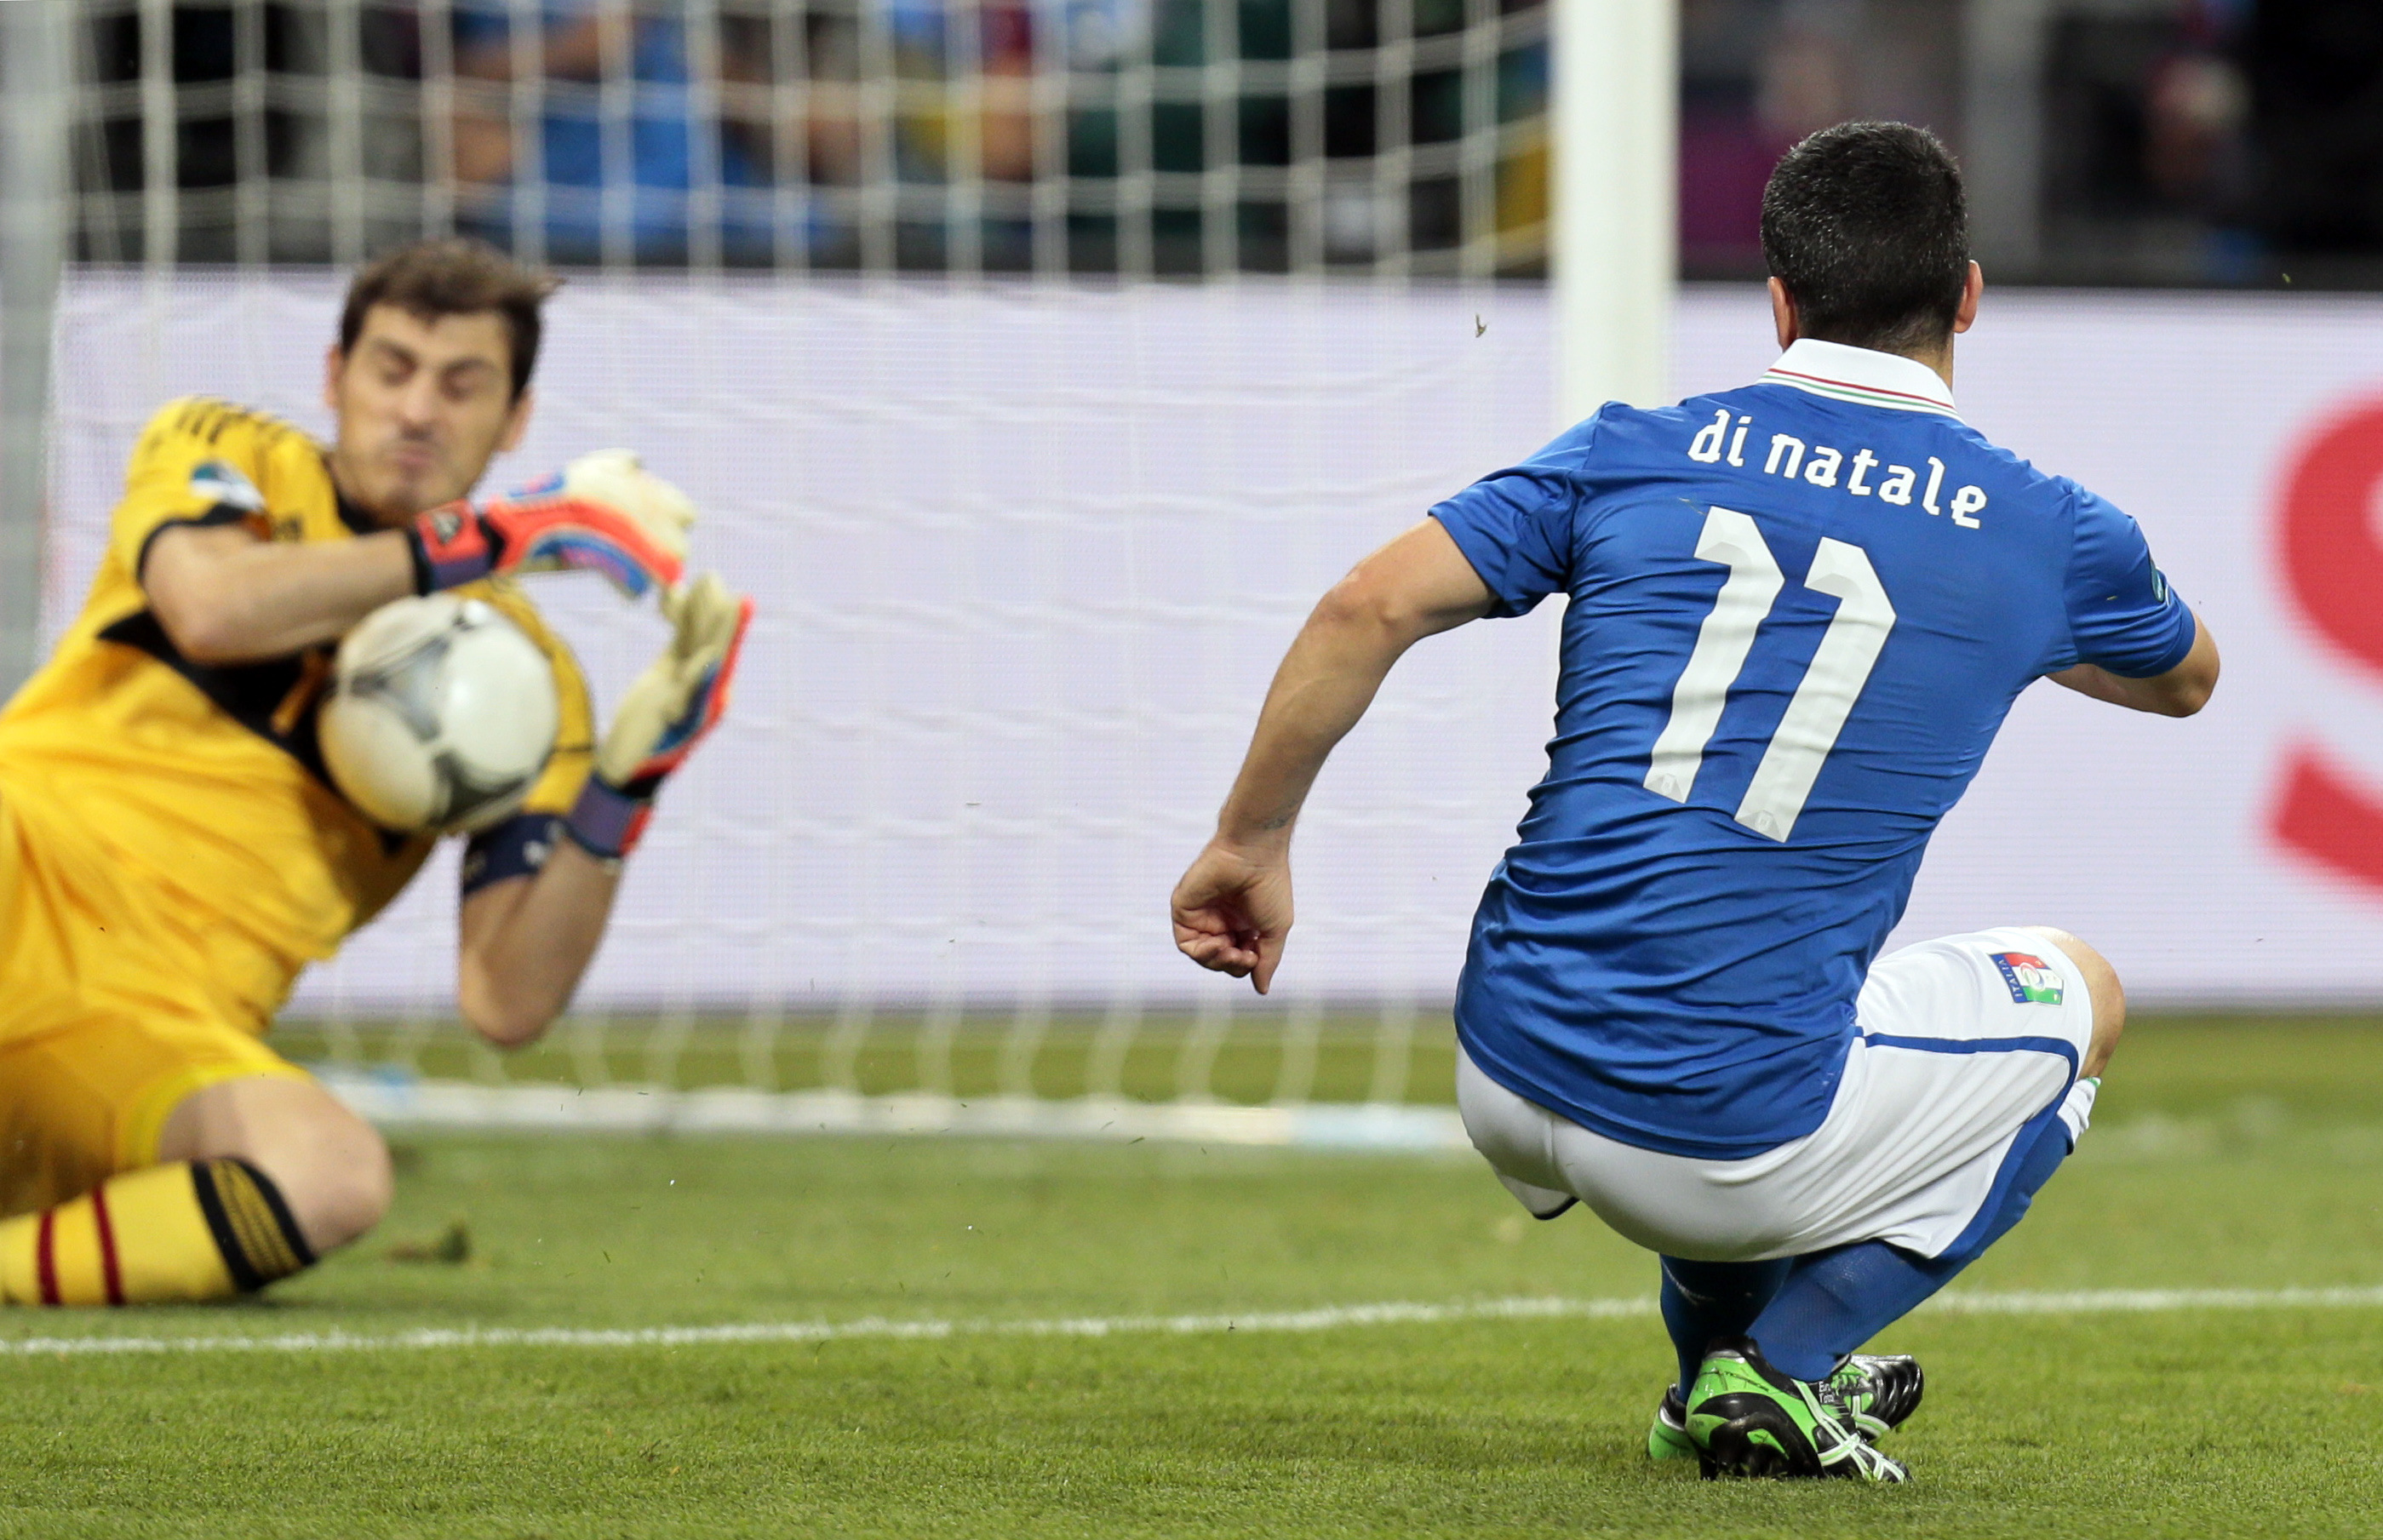 Di Natale försökte få hål på Casillas.